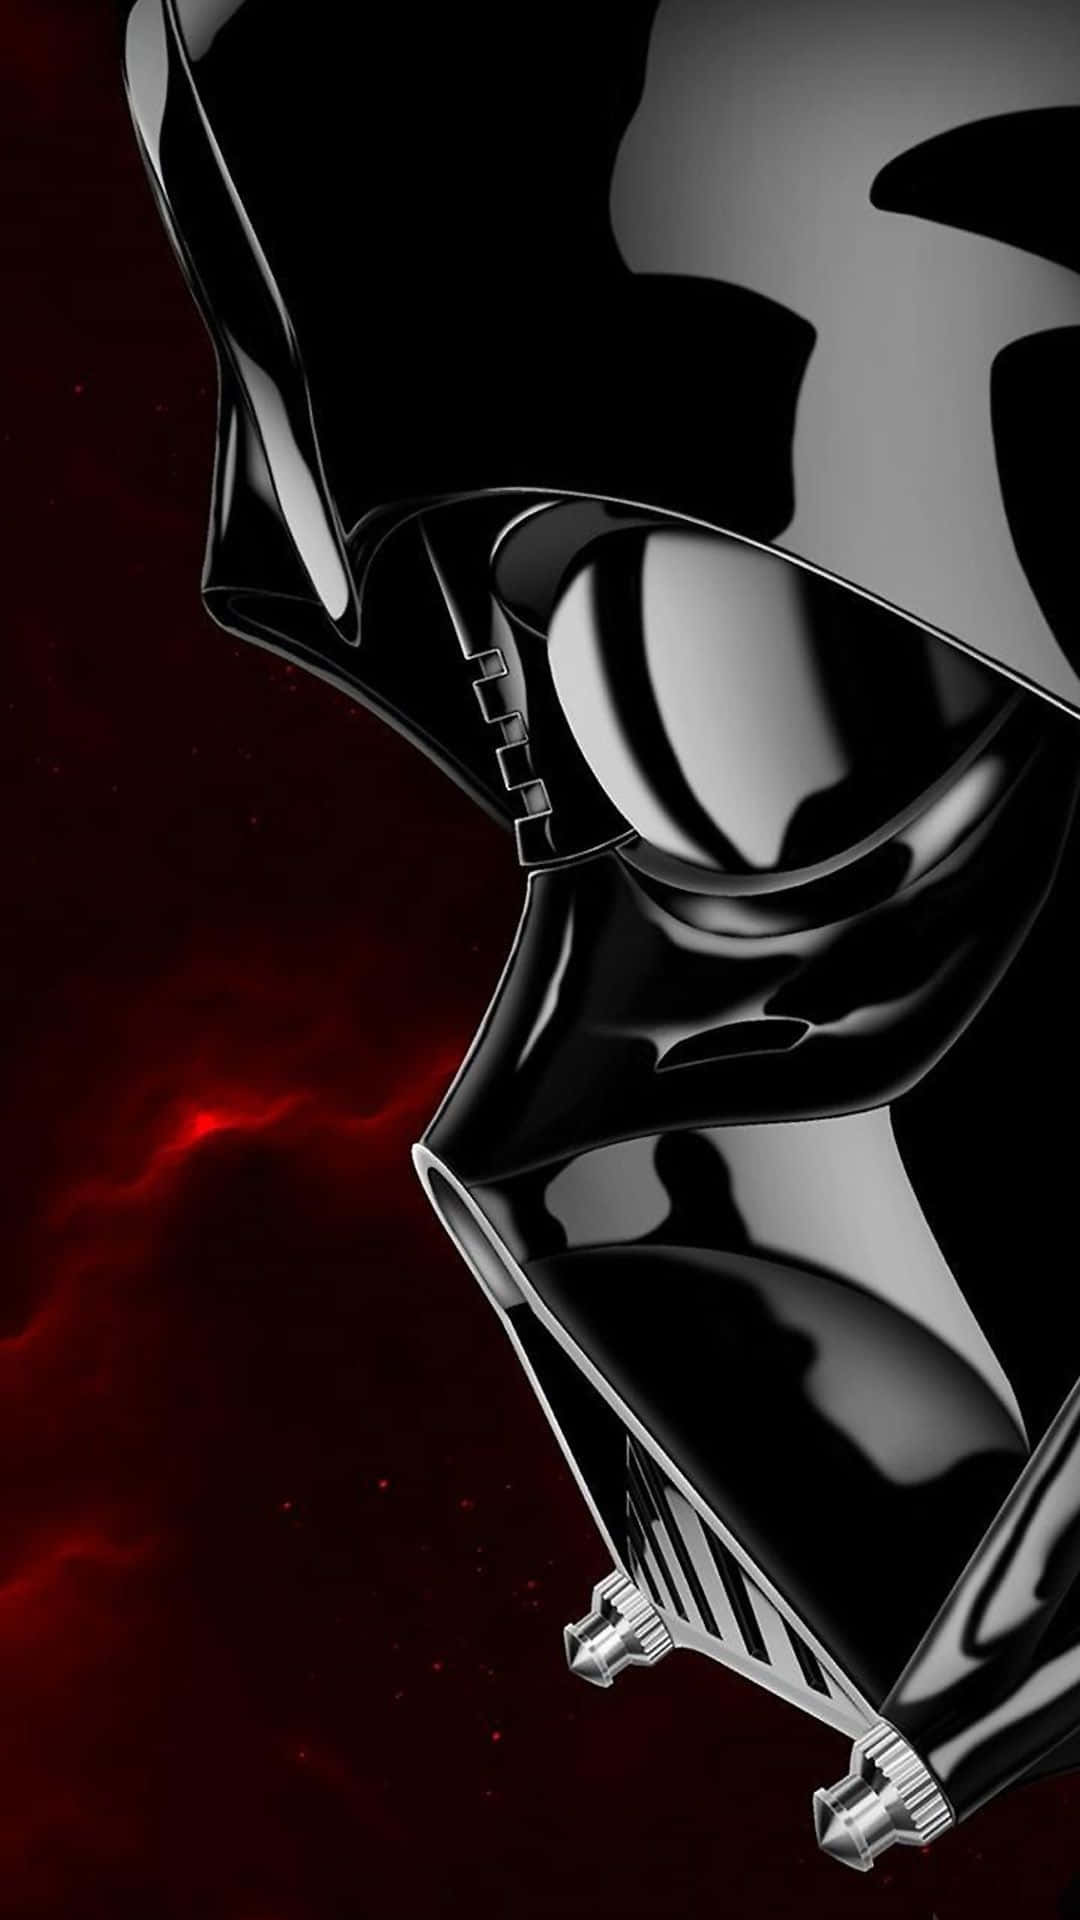 Consigueel Nuevo Iphone Con Temática De Darth Vader. Fondo de pantalla